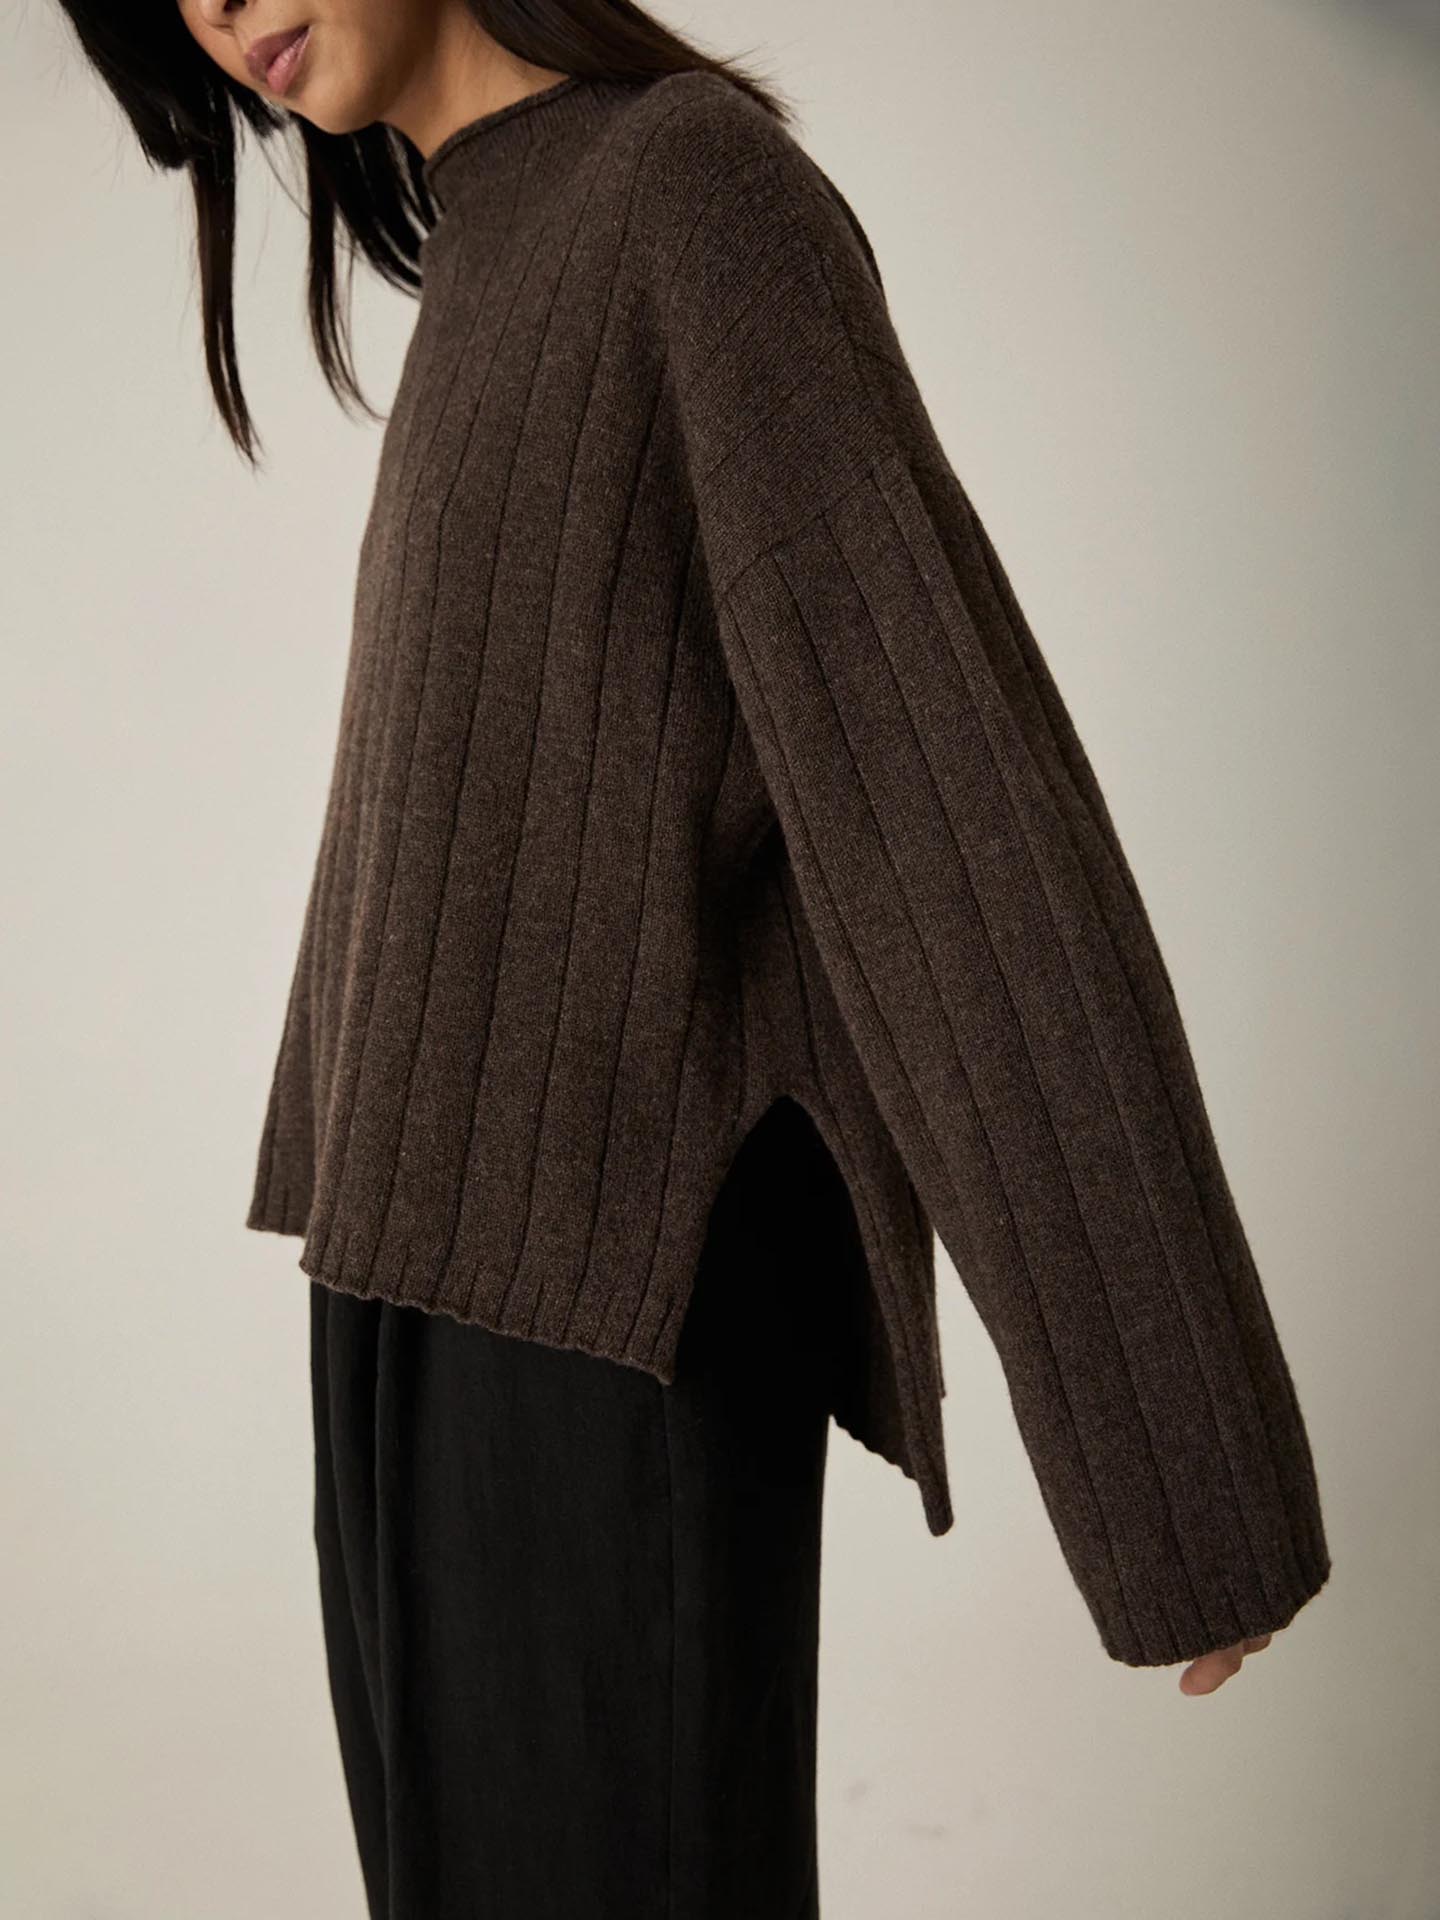 A woman wearing an oversized Francie Echo Knit – Truffle sweater.